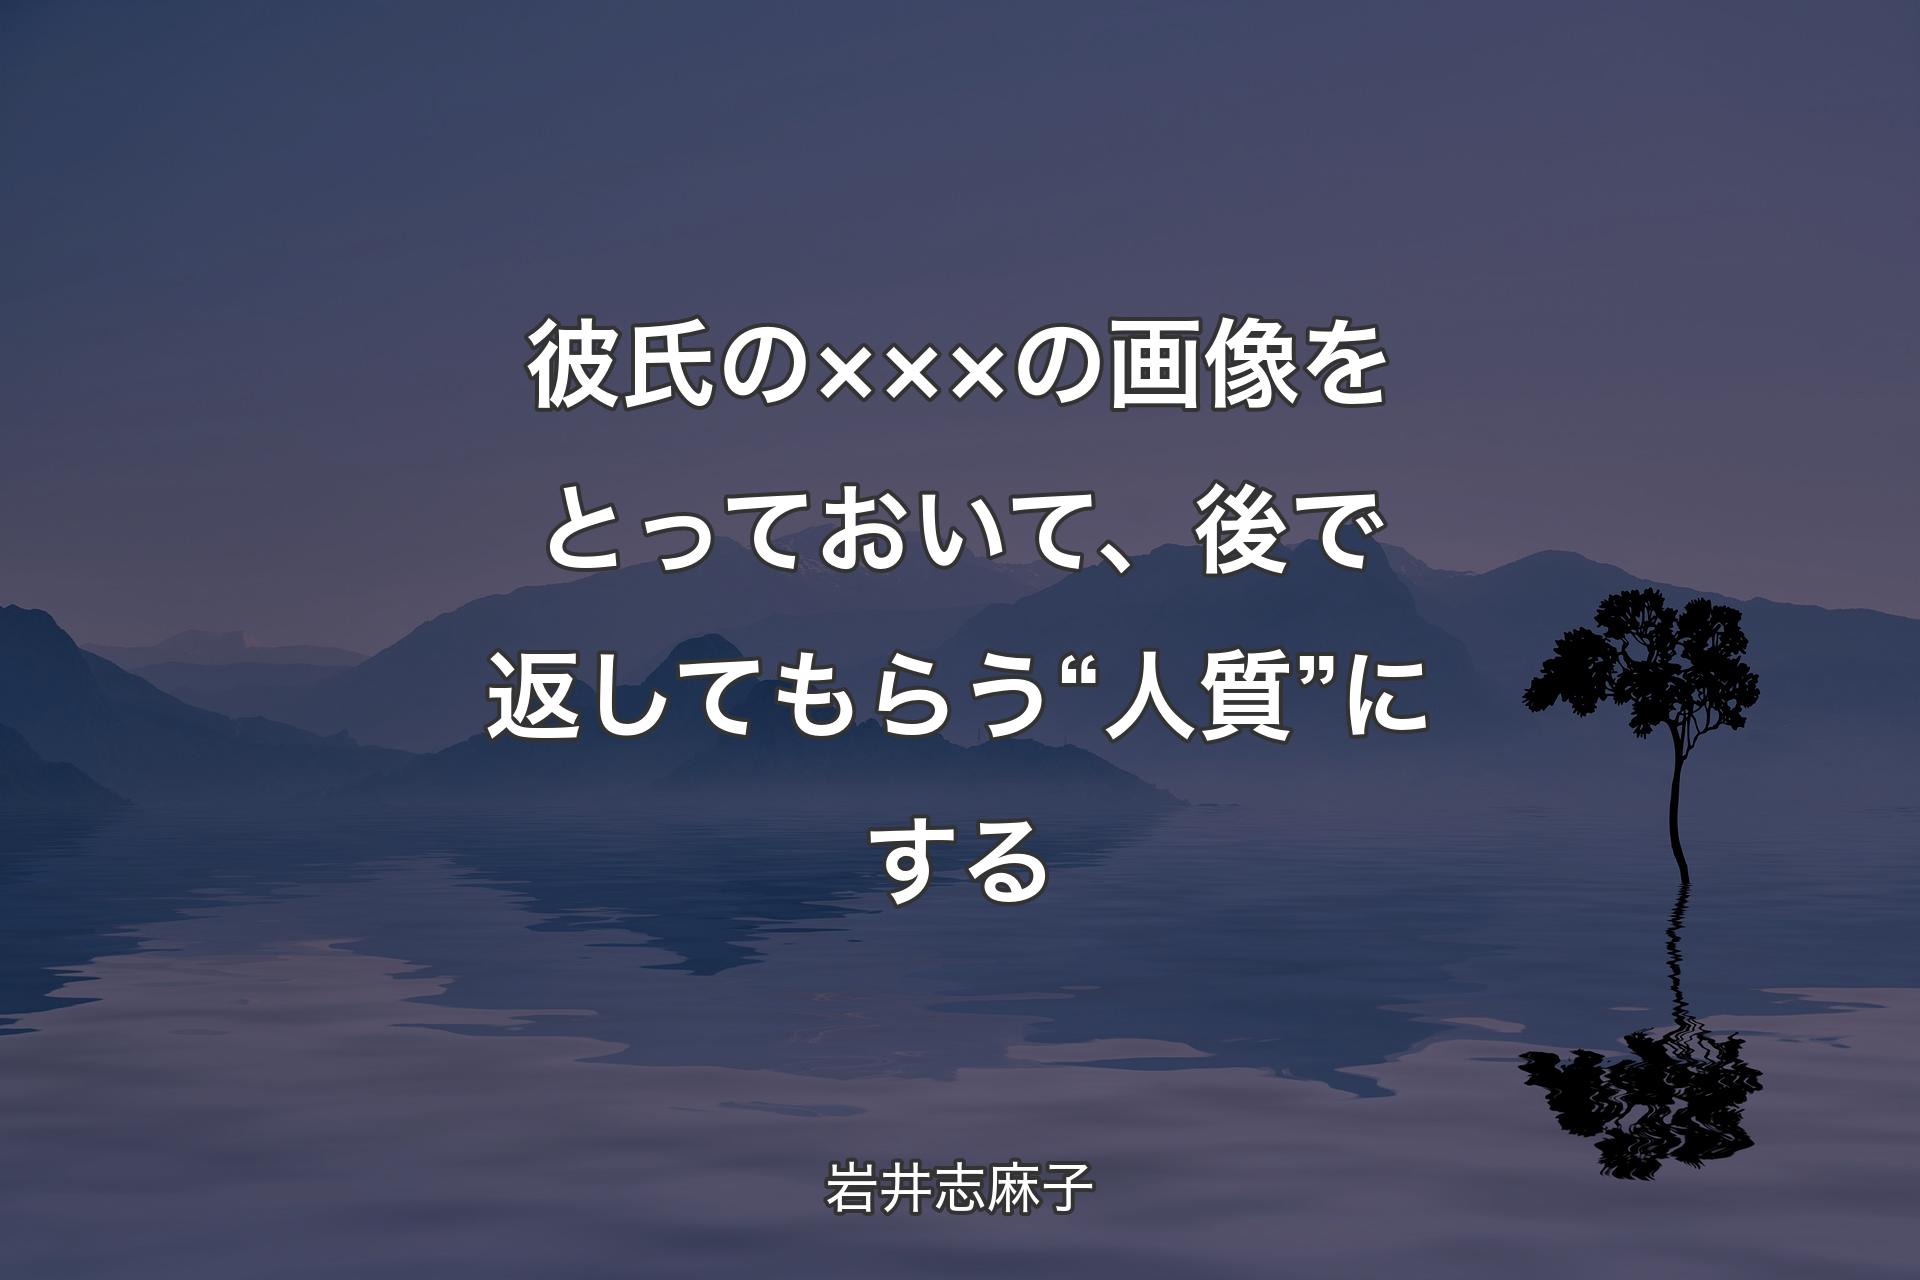 【背景4】彼氏の×××の画像をとっておいて、後で返してもらう“人質”にする - 岩井志麻子